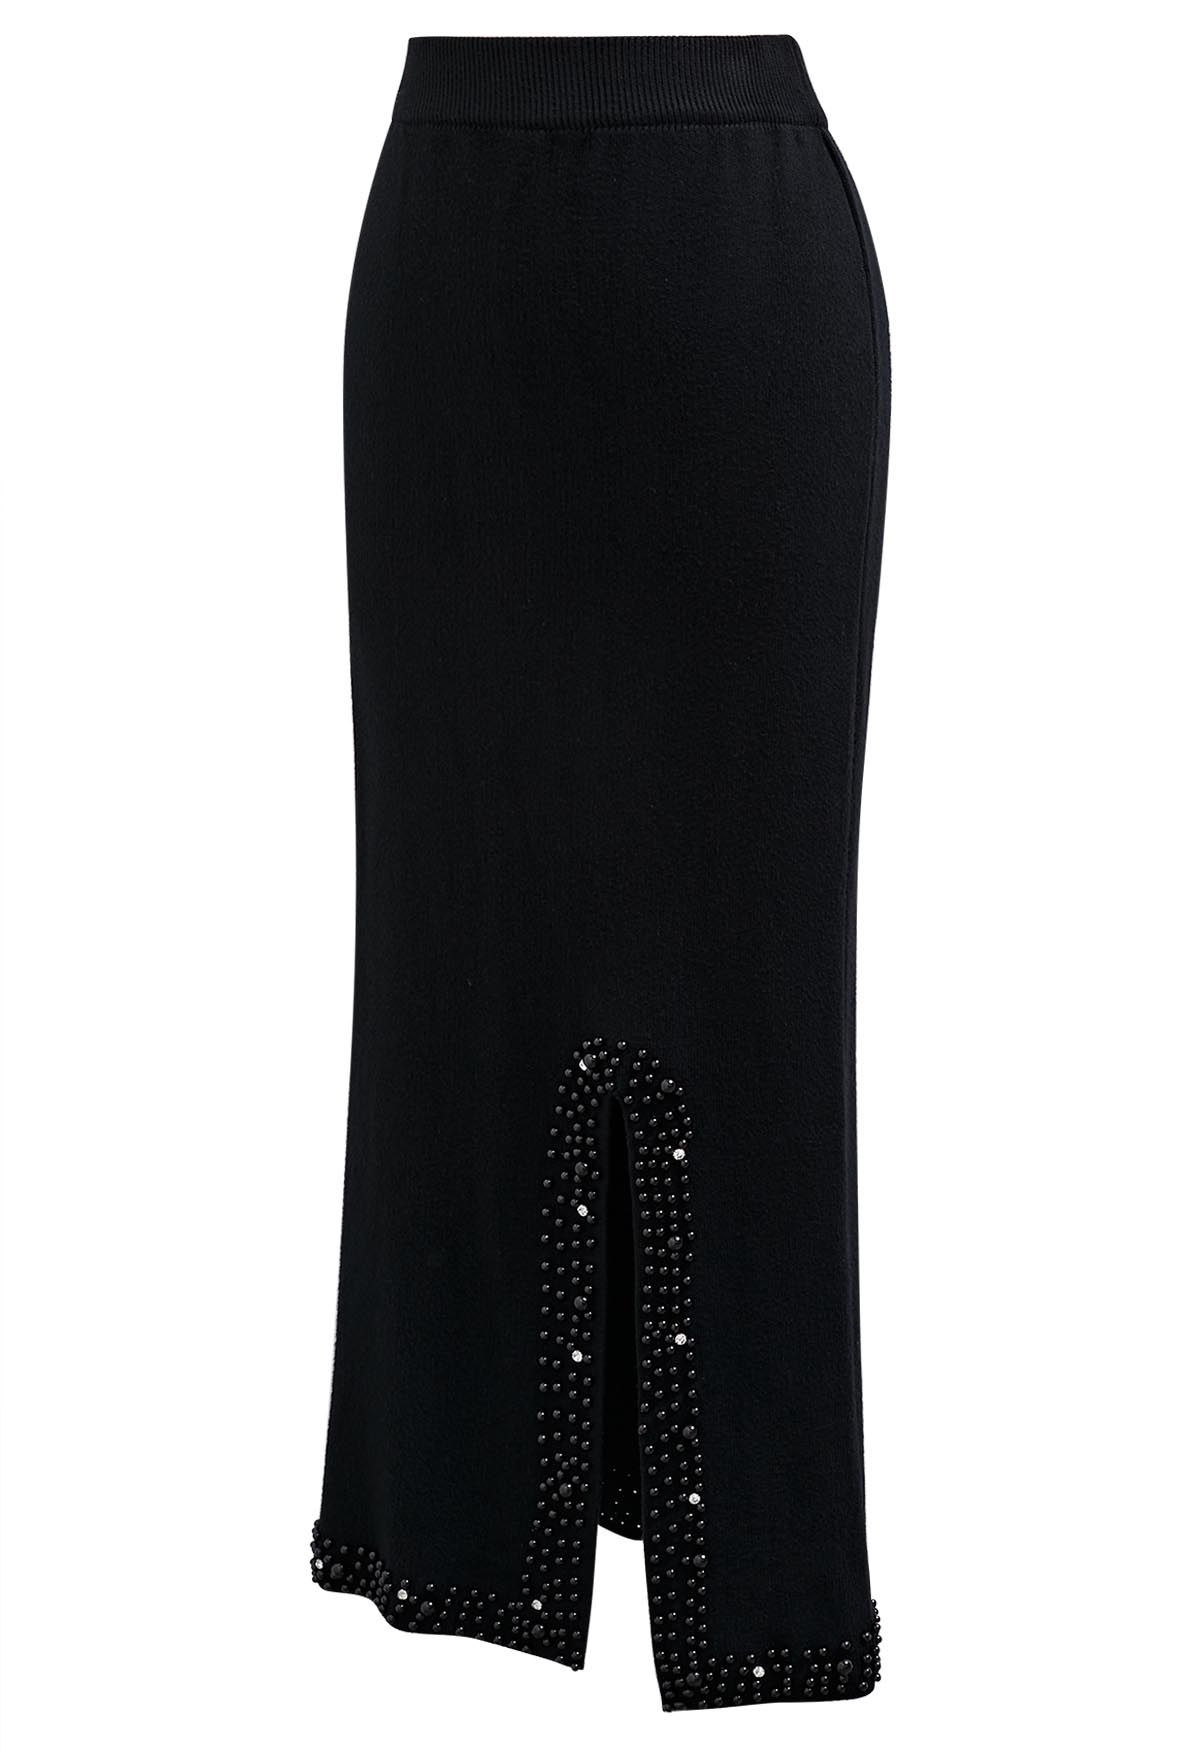 Pearl Embellished Slit Hem Knit Pencil Skirt in Black